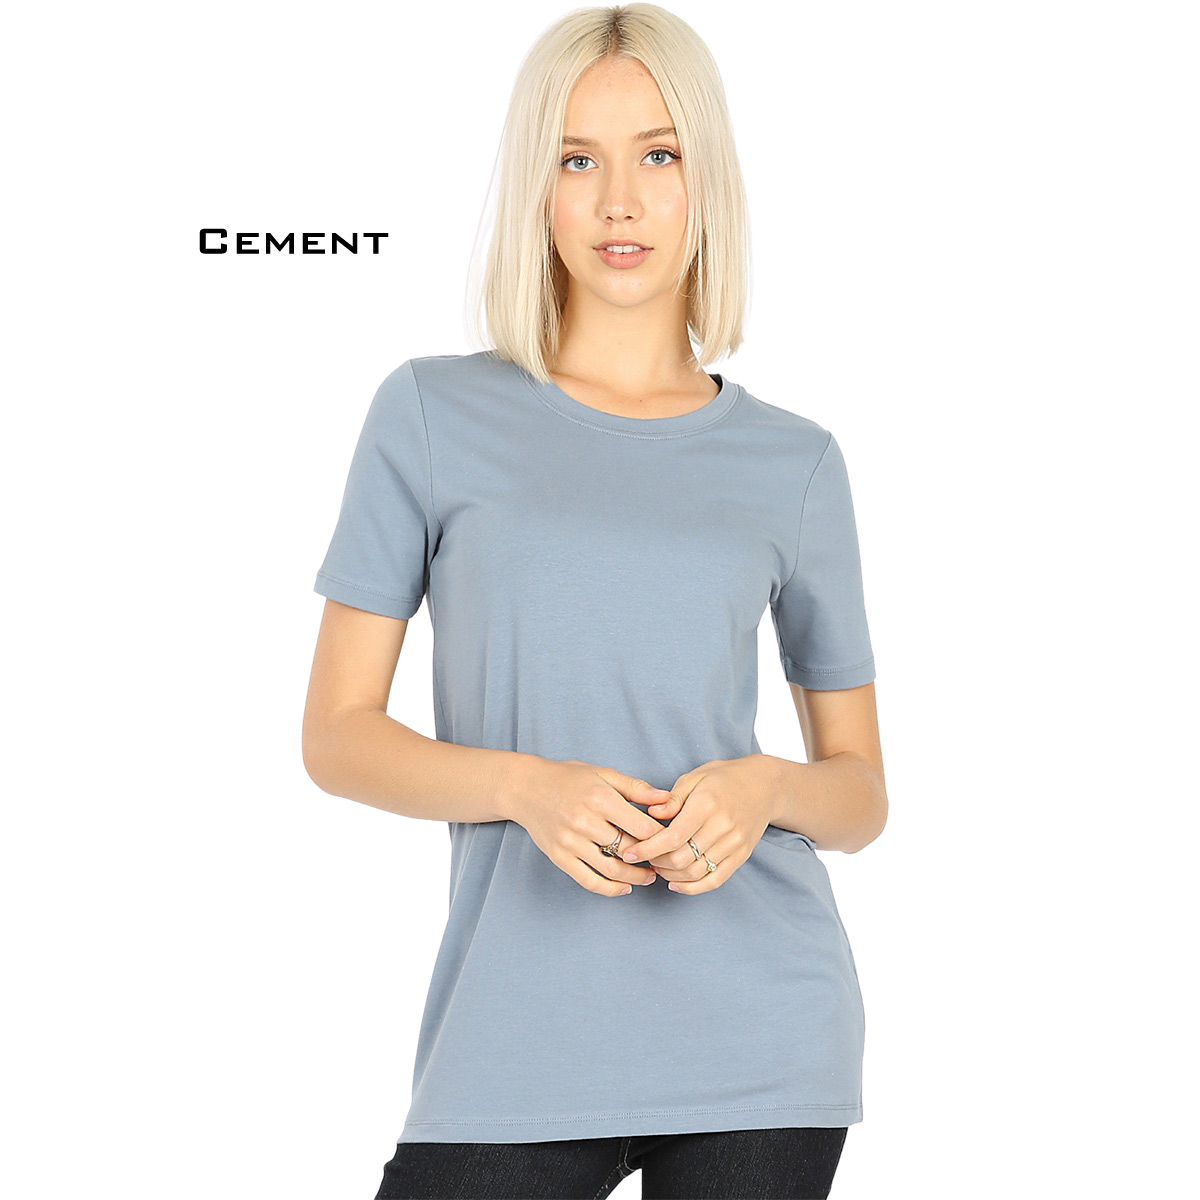 CEMENT Crew Neck Short Sleeve T-Shirt 1008 